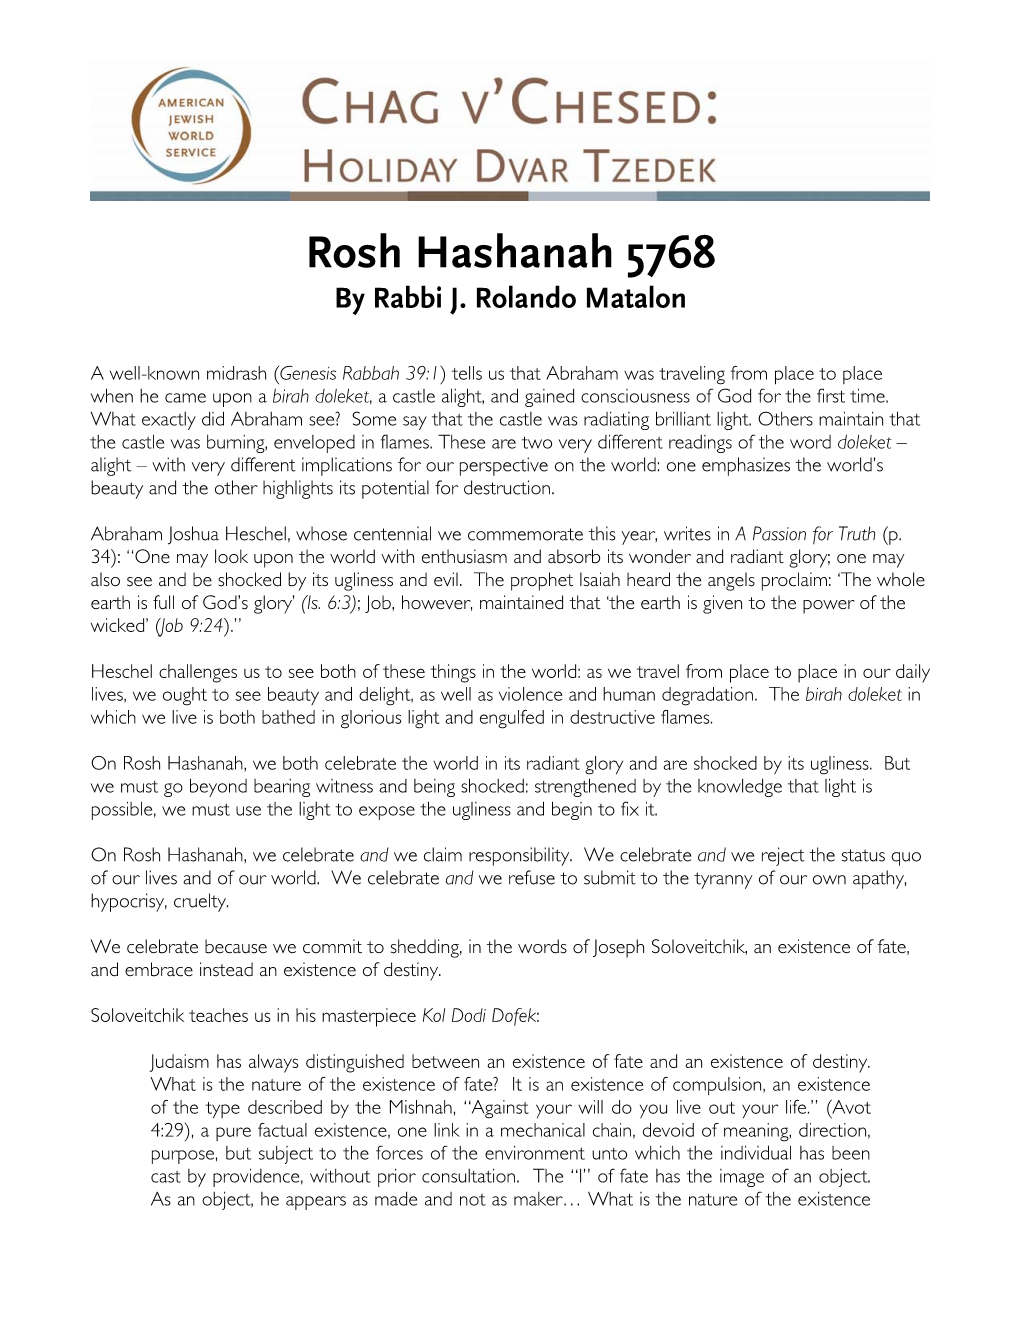 Rosh Hashanah 5768 by Rabbi J